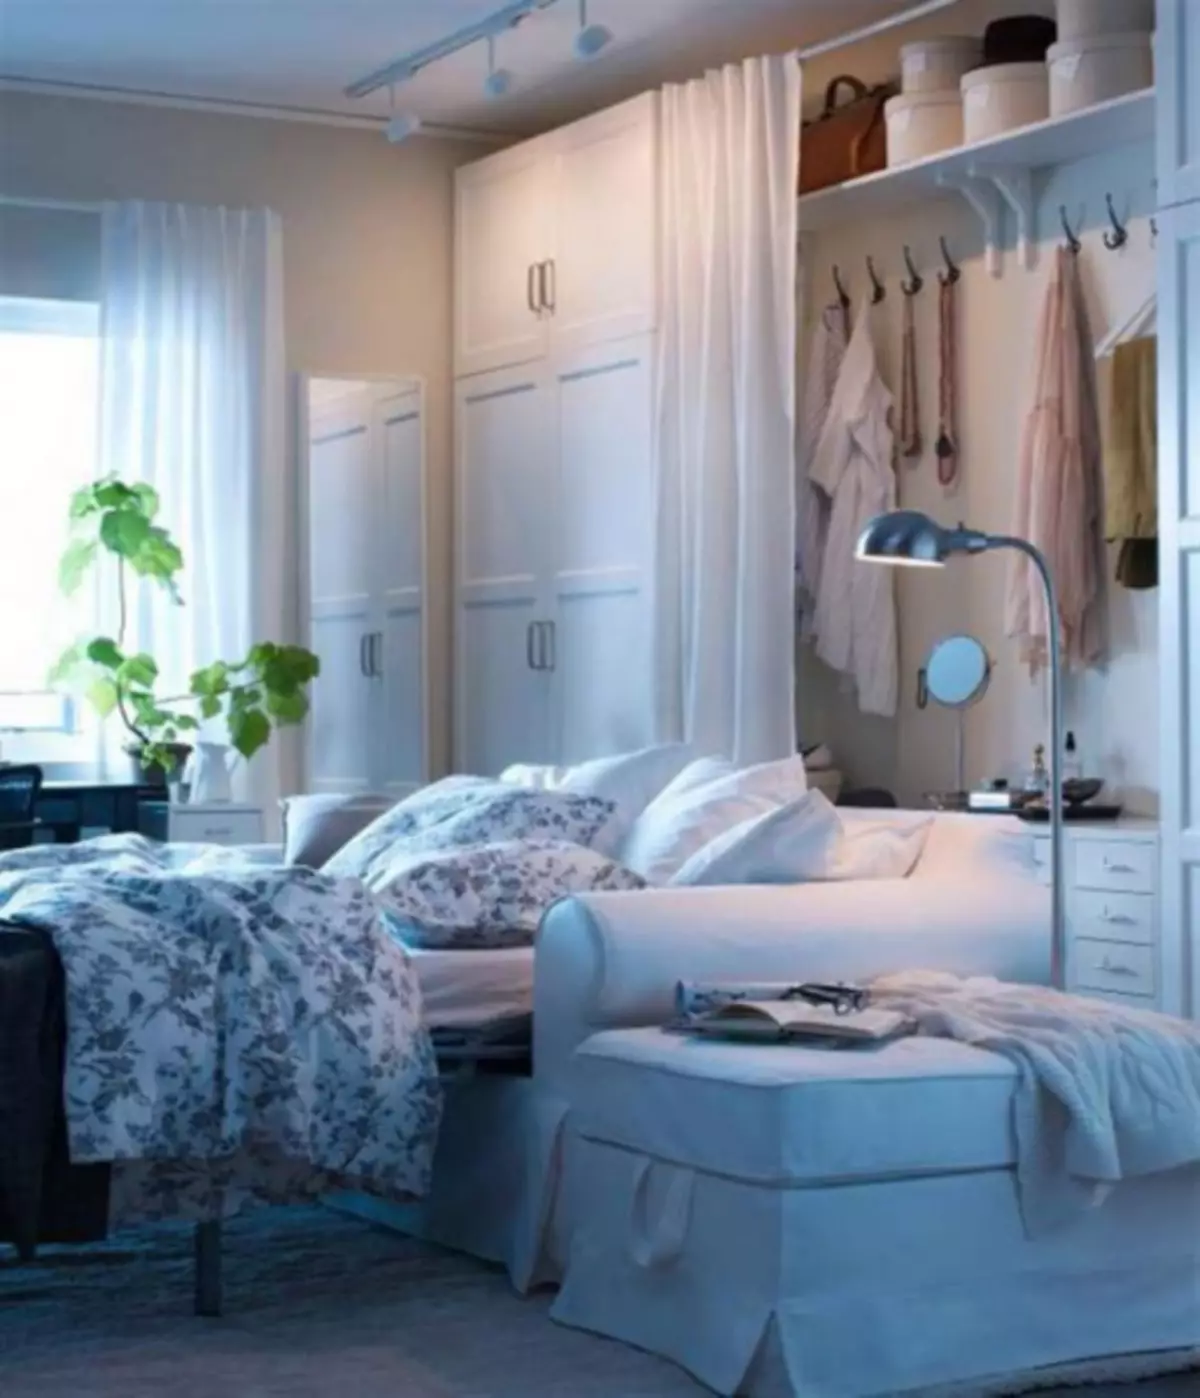 غرف المعيشة IKEA - 100 صورة من أفضل النماذج من كتالوج 2019